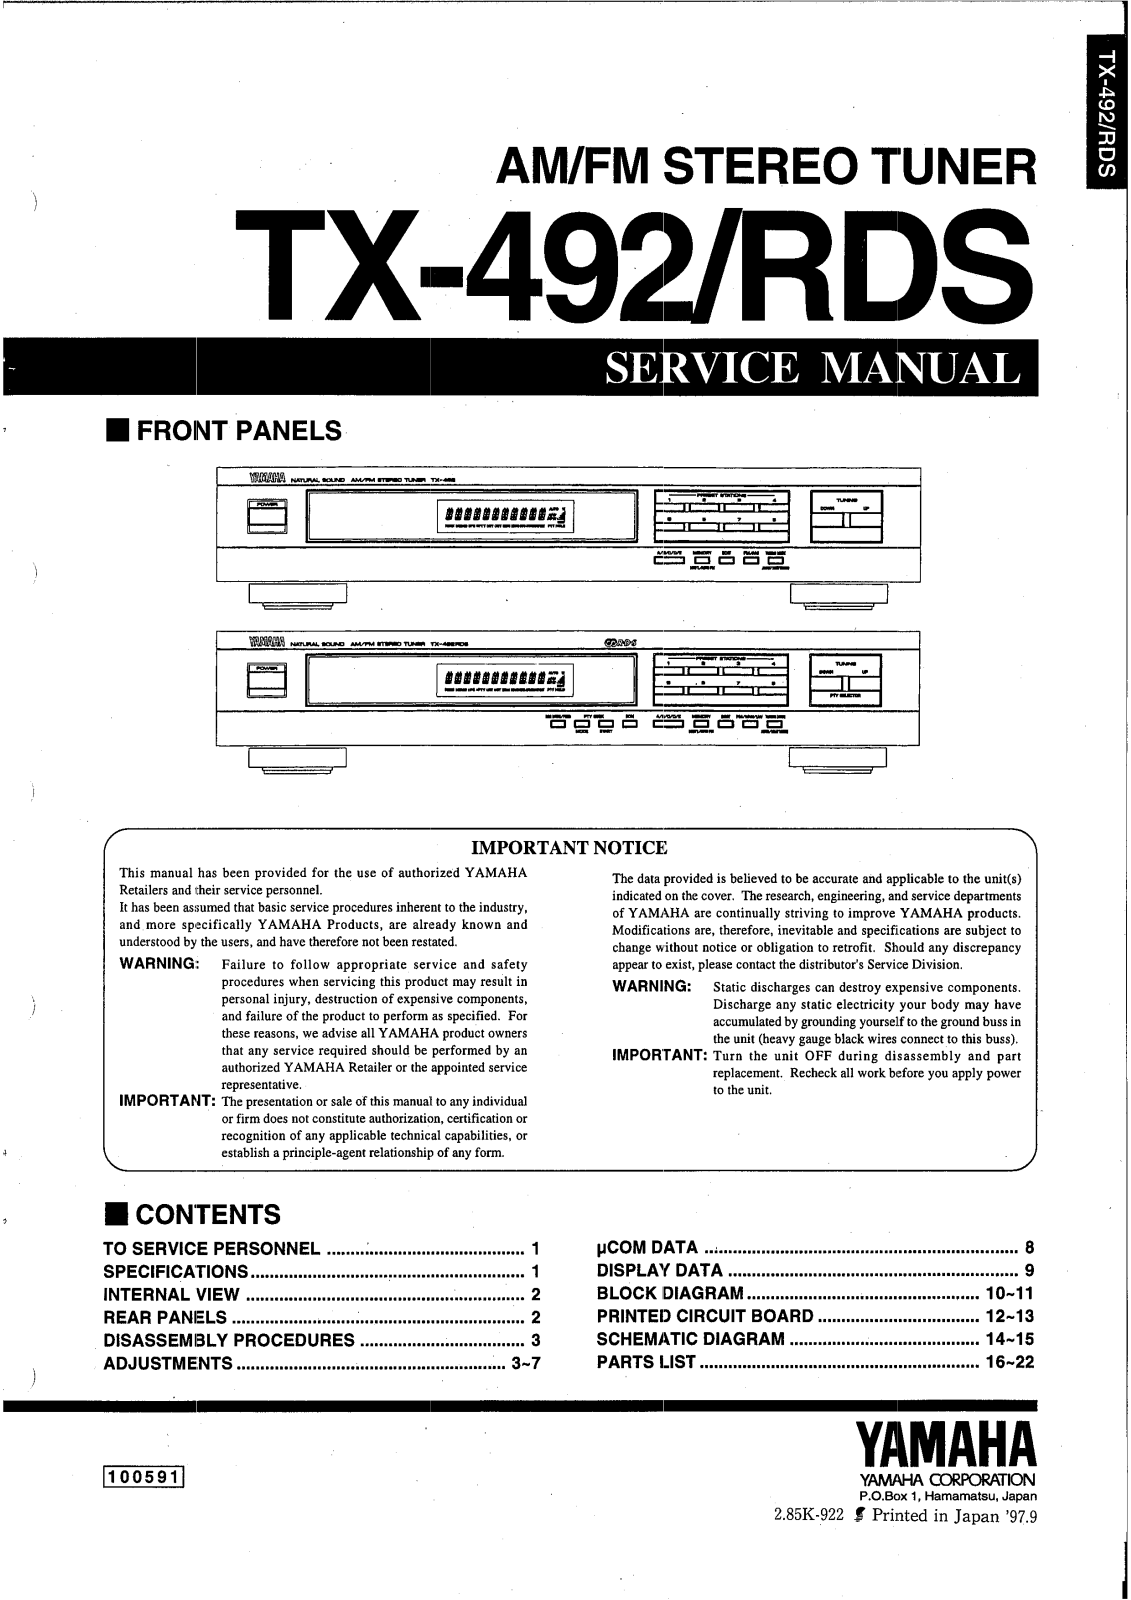 Yamaha TX-492-RDS Service manual